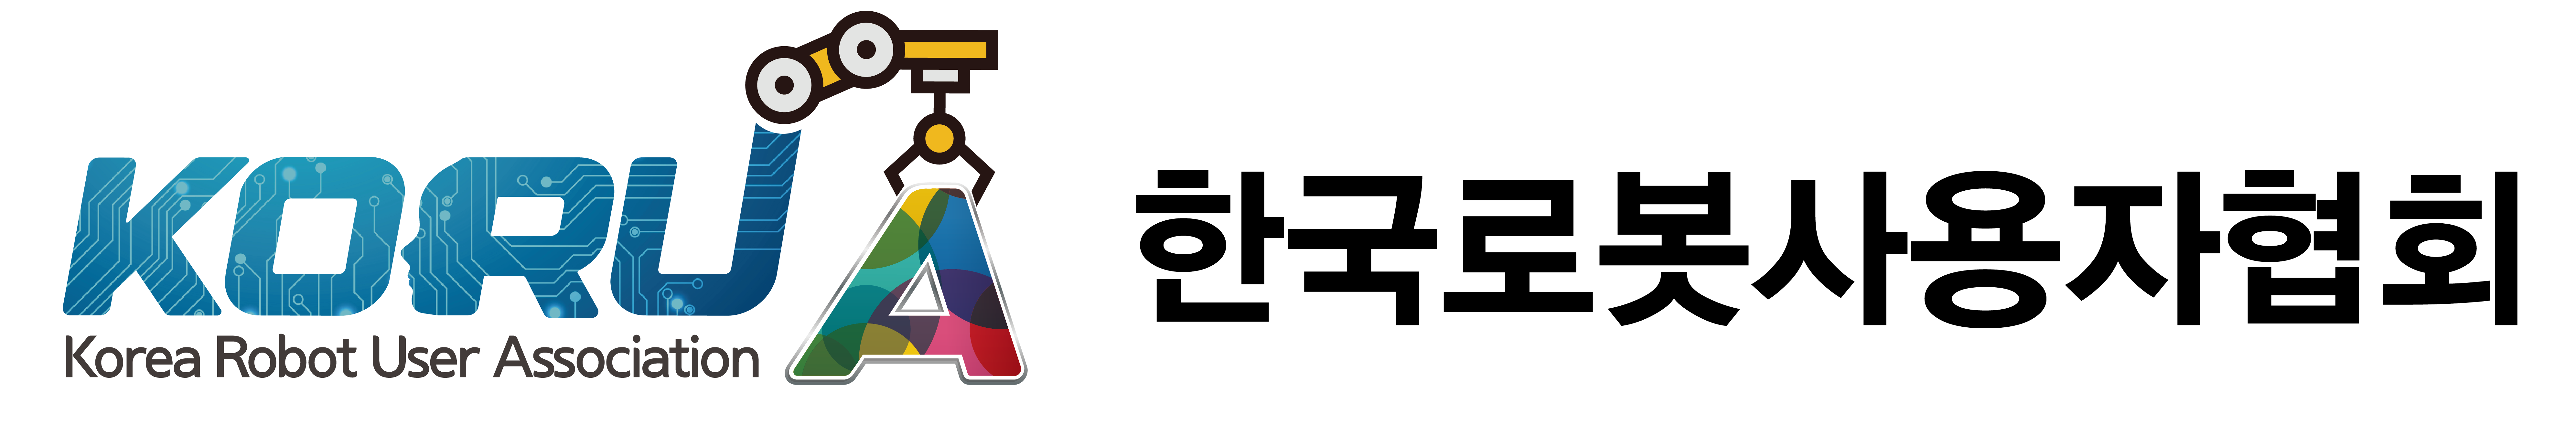 한국로봇사용자협회